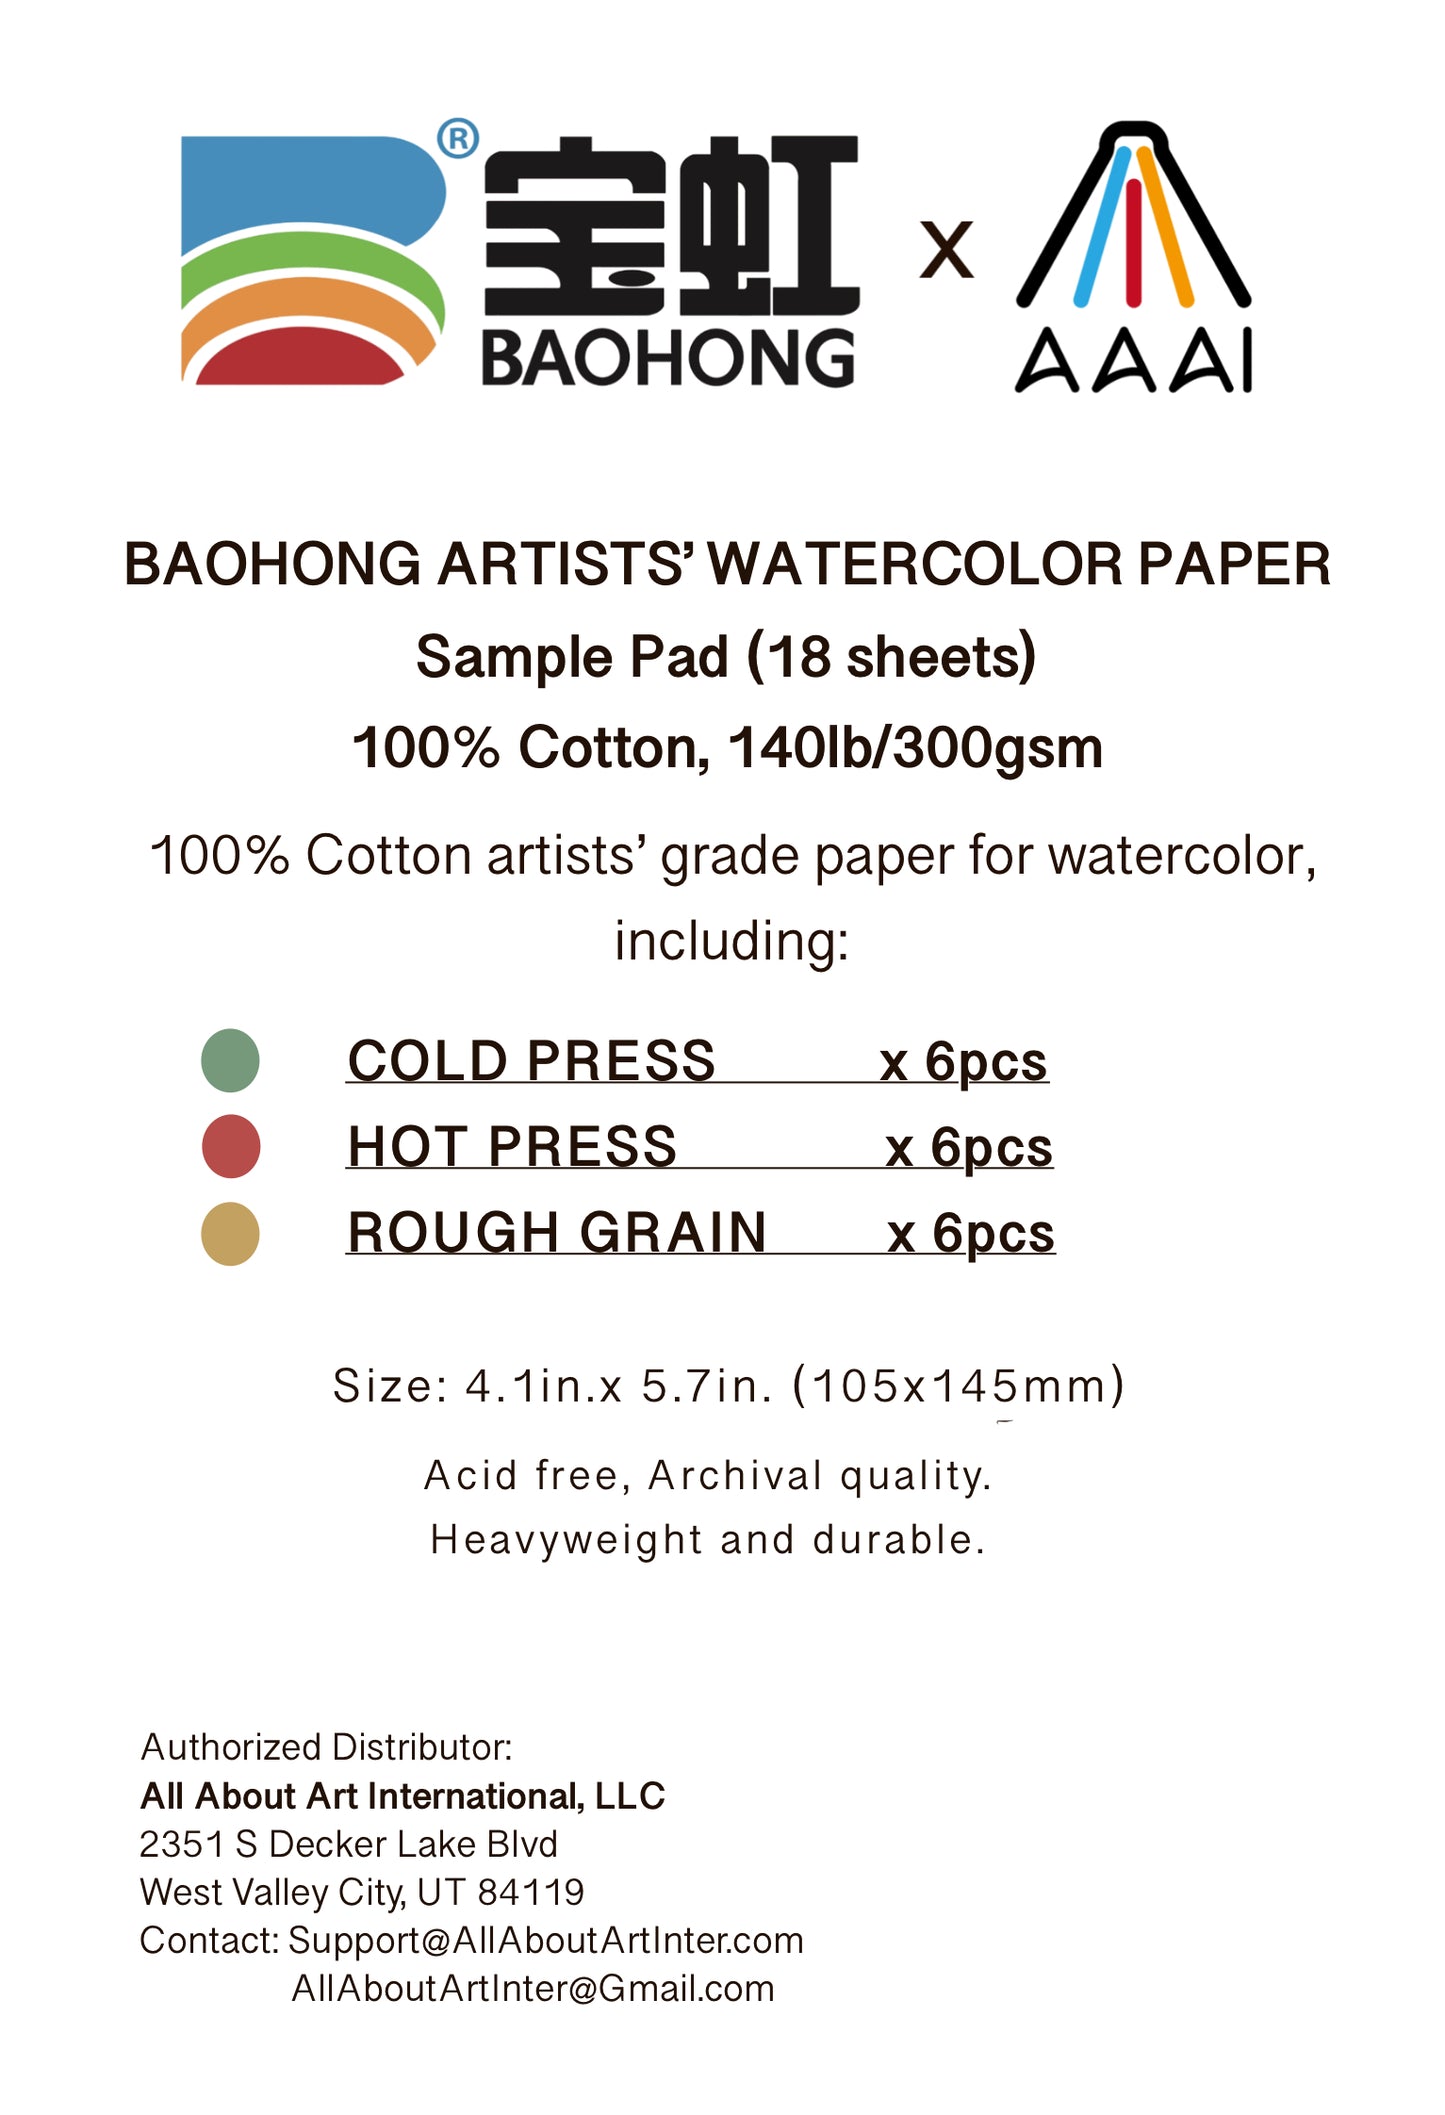 BAOHONG : BUNDLE OF 10 : ARTIST GRADE PAPER SAMPLE PAD